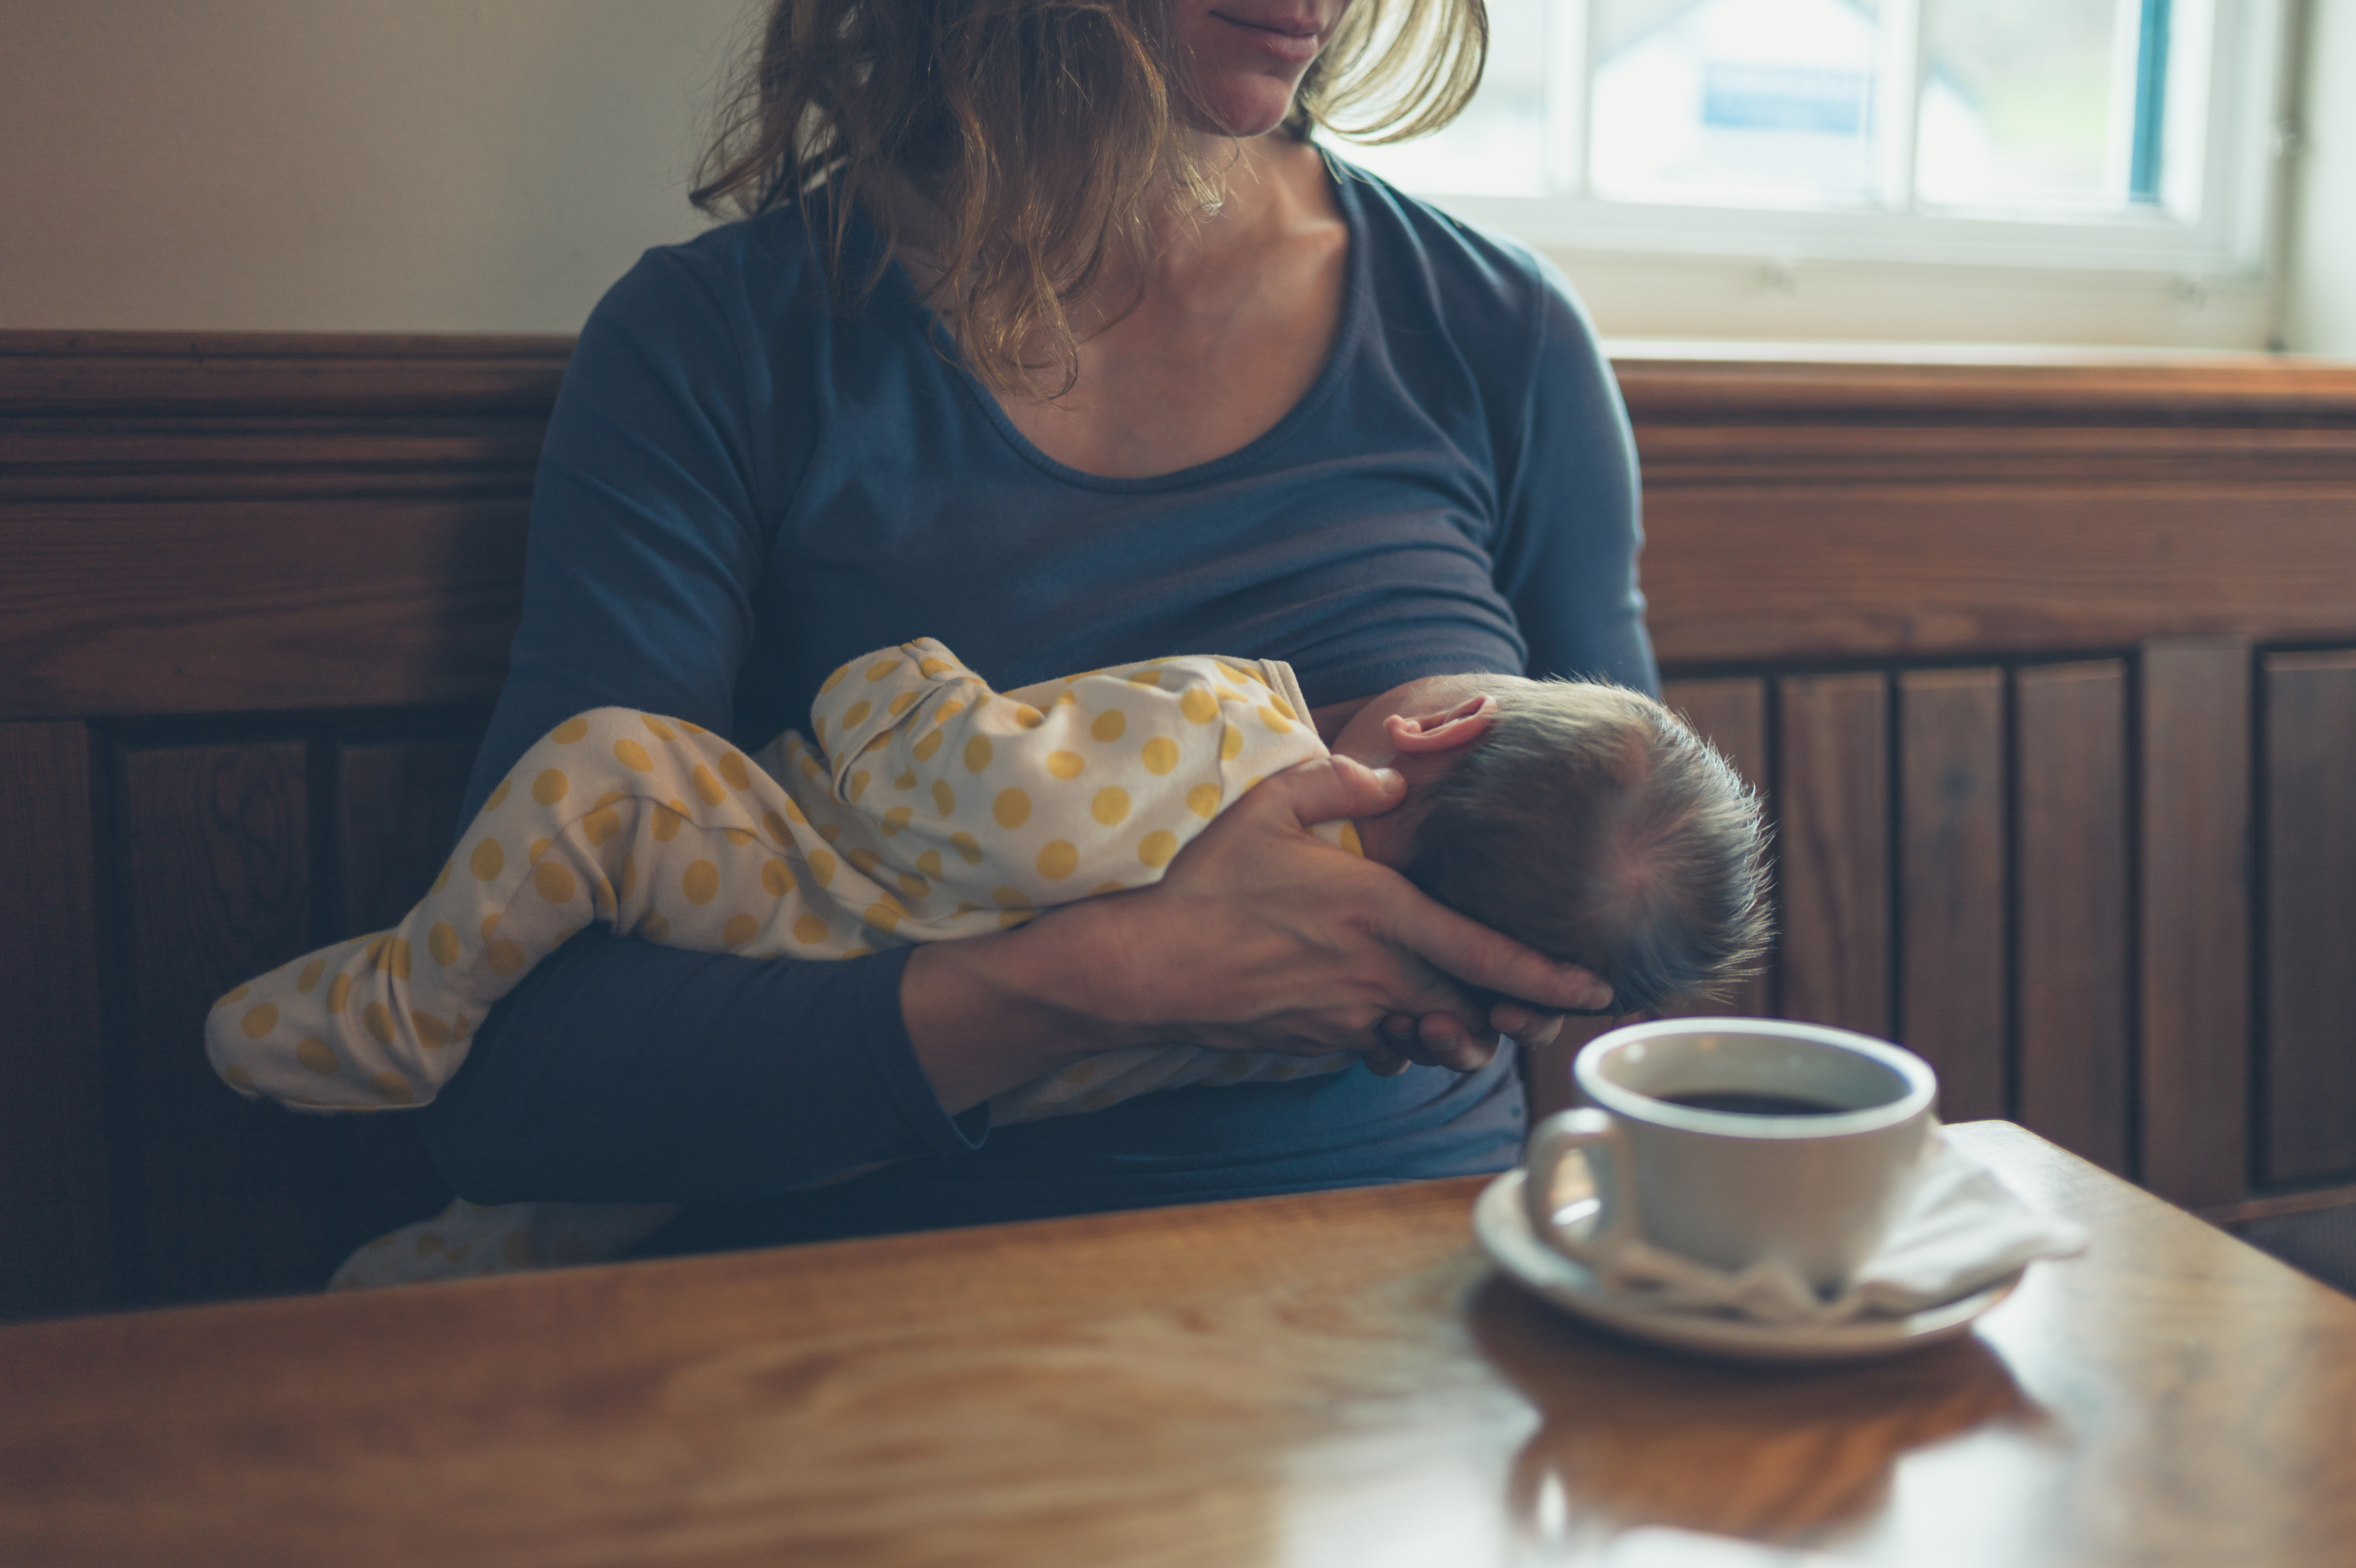 a mom breastfeeding in public